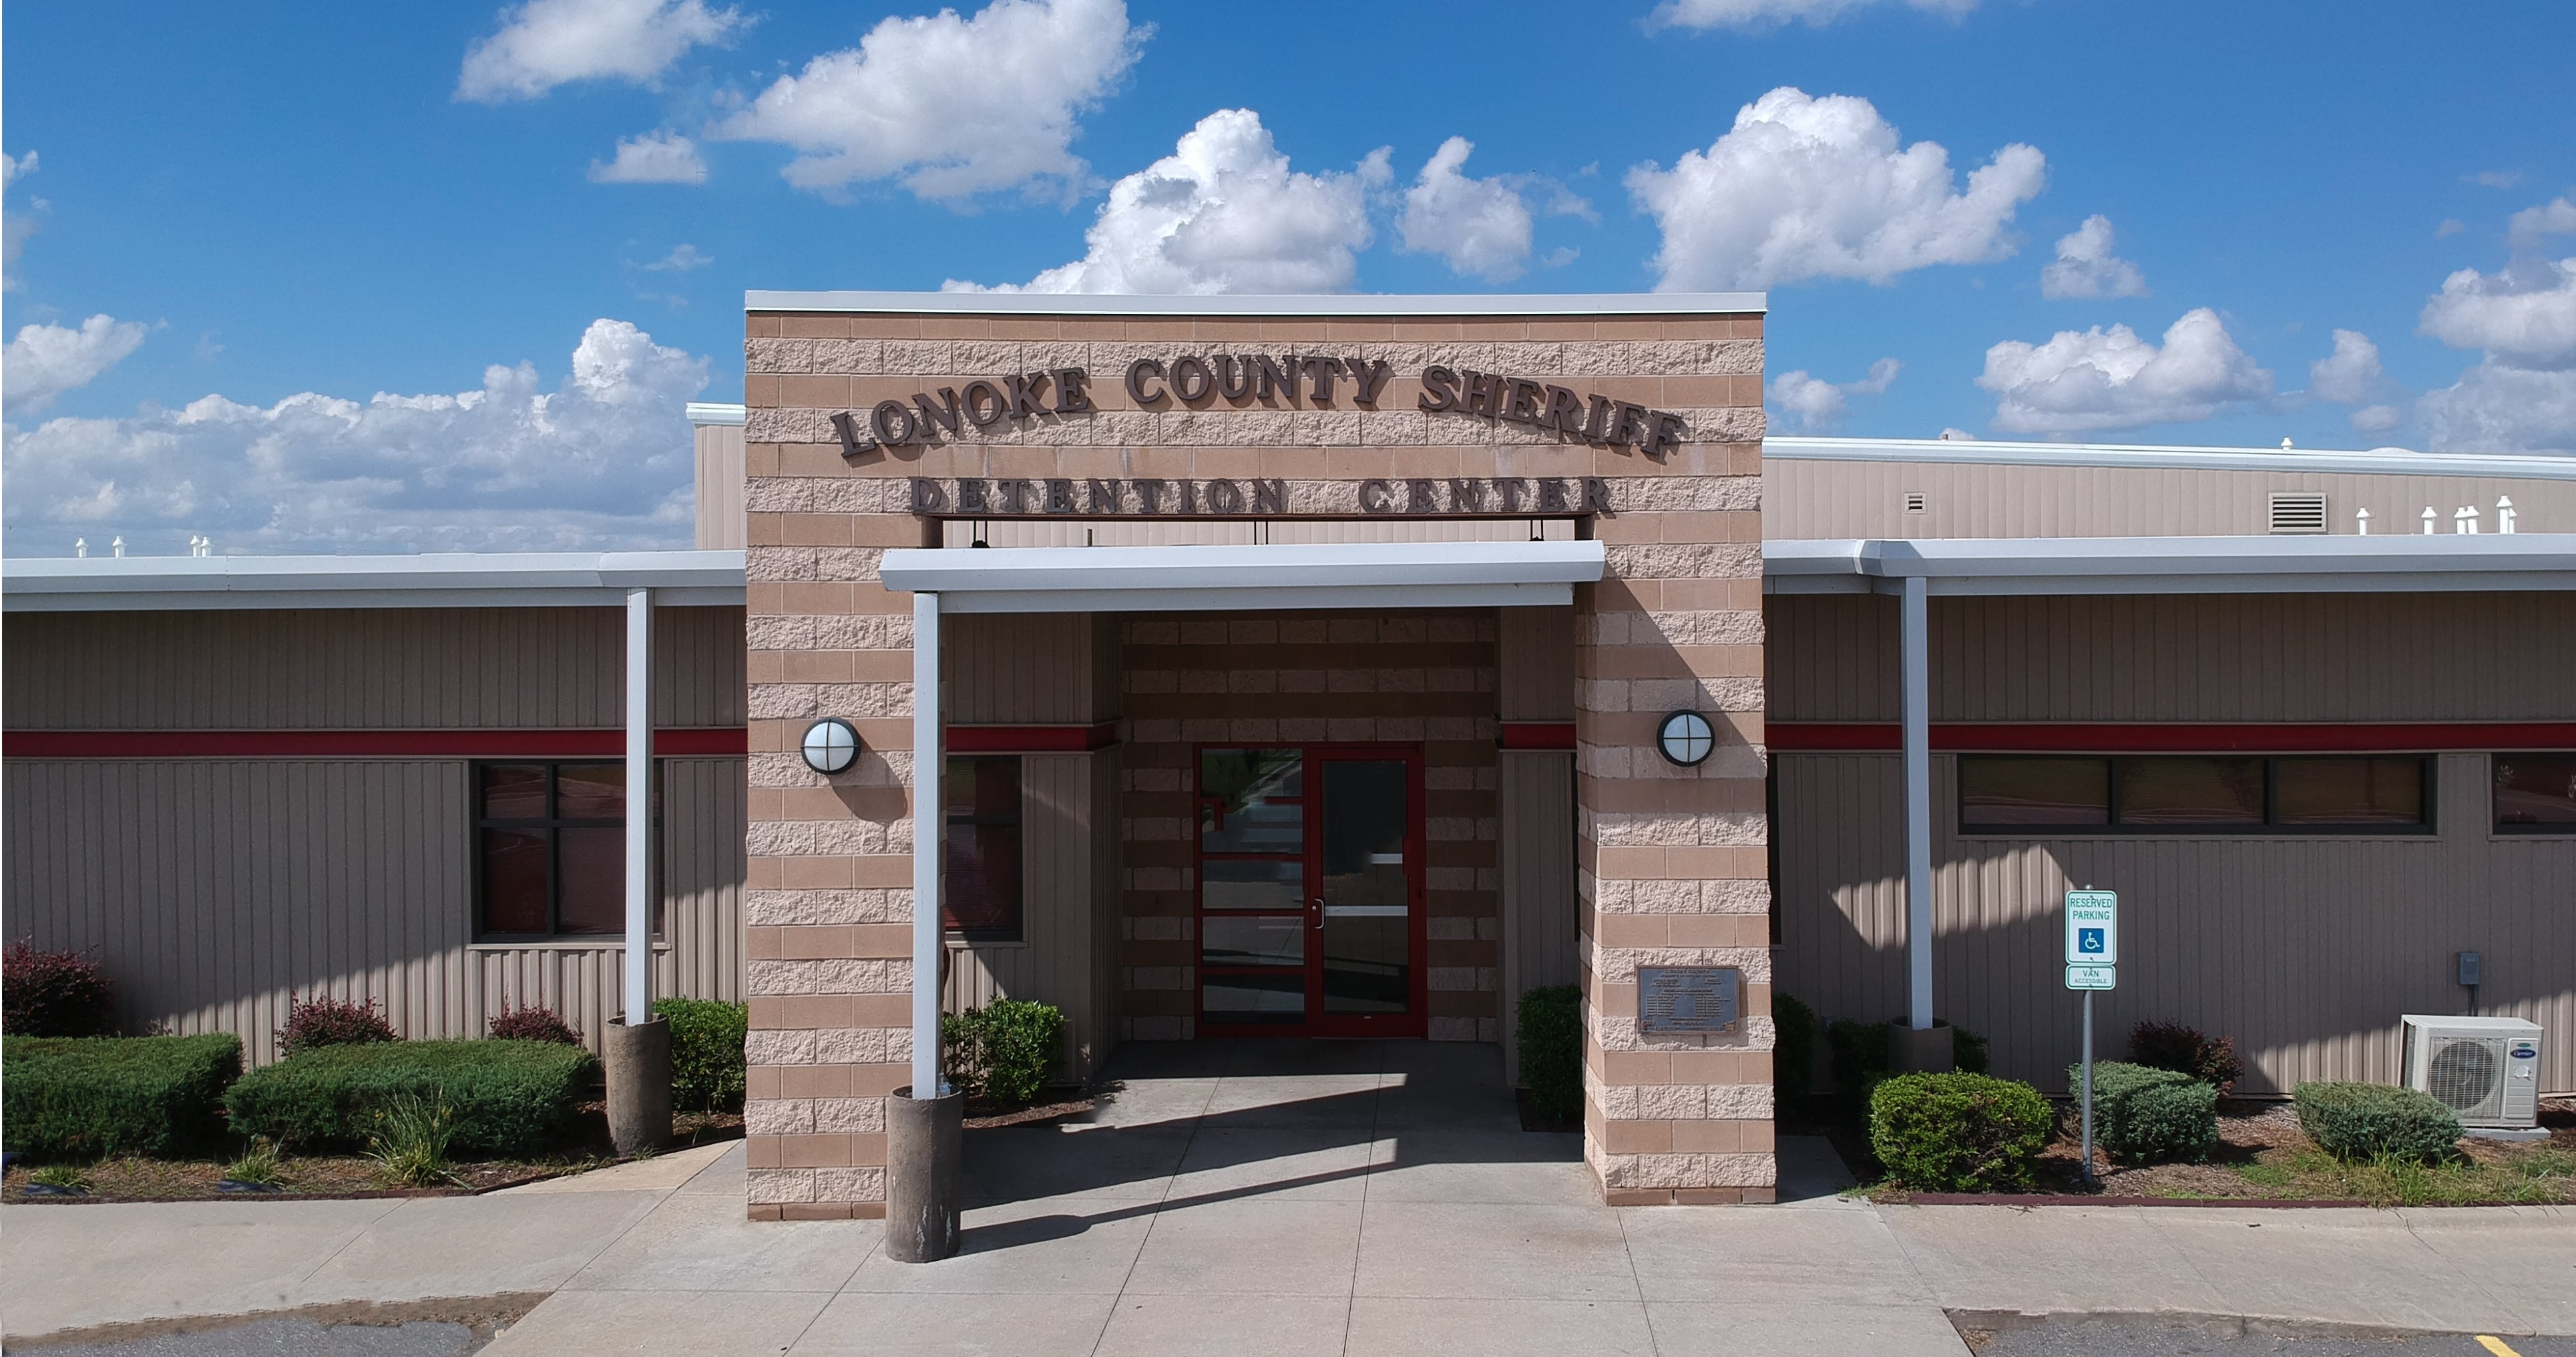 Information Allerts Lonoke County Sheriff #39 s Office